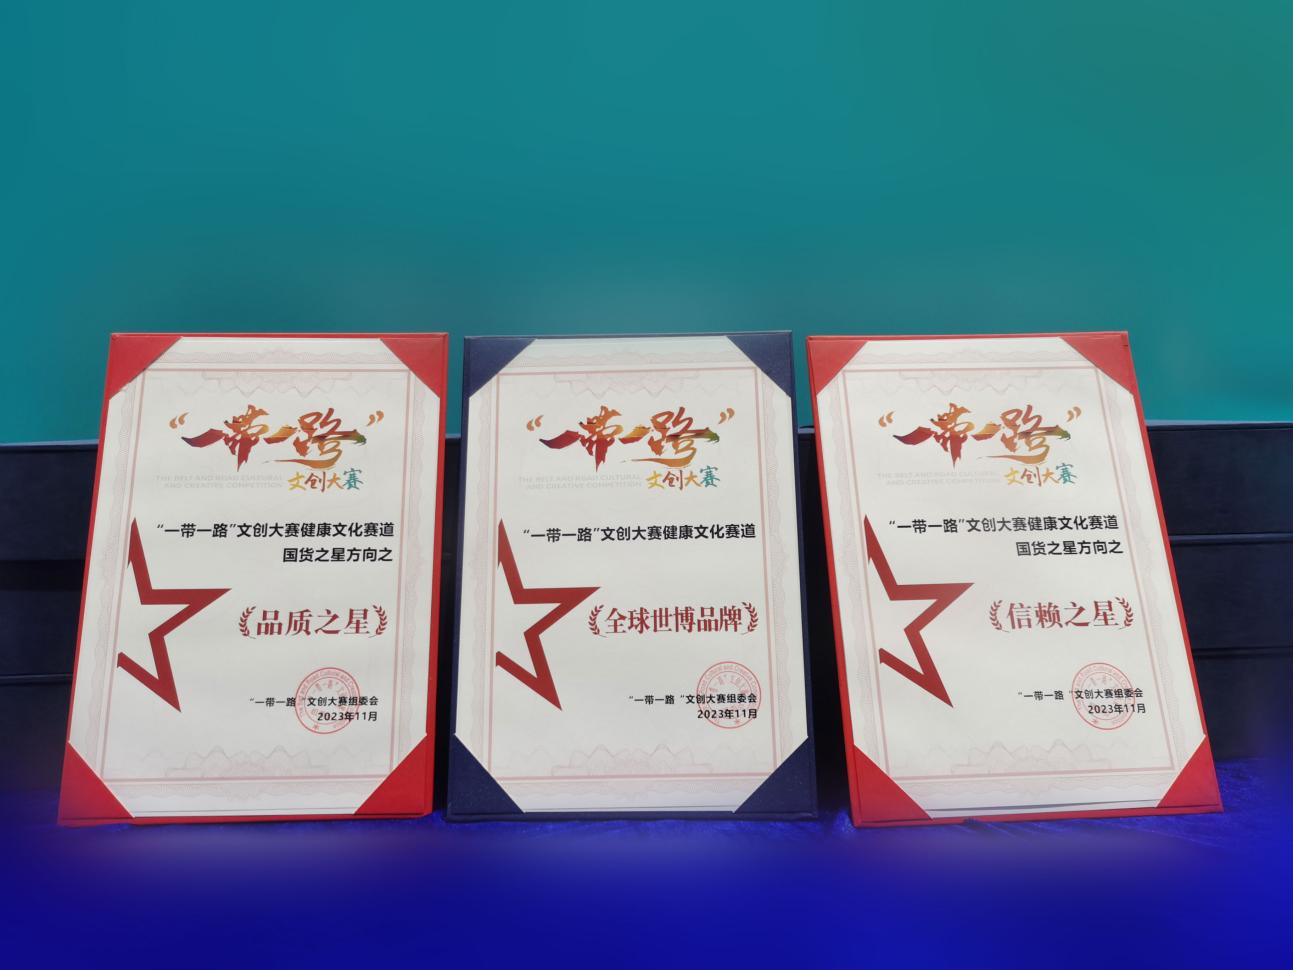 第20届中国国际保健博览会在广州举行，逢时科技斩获三项企业奖